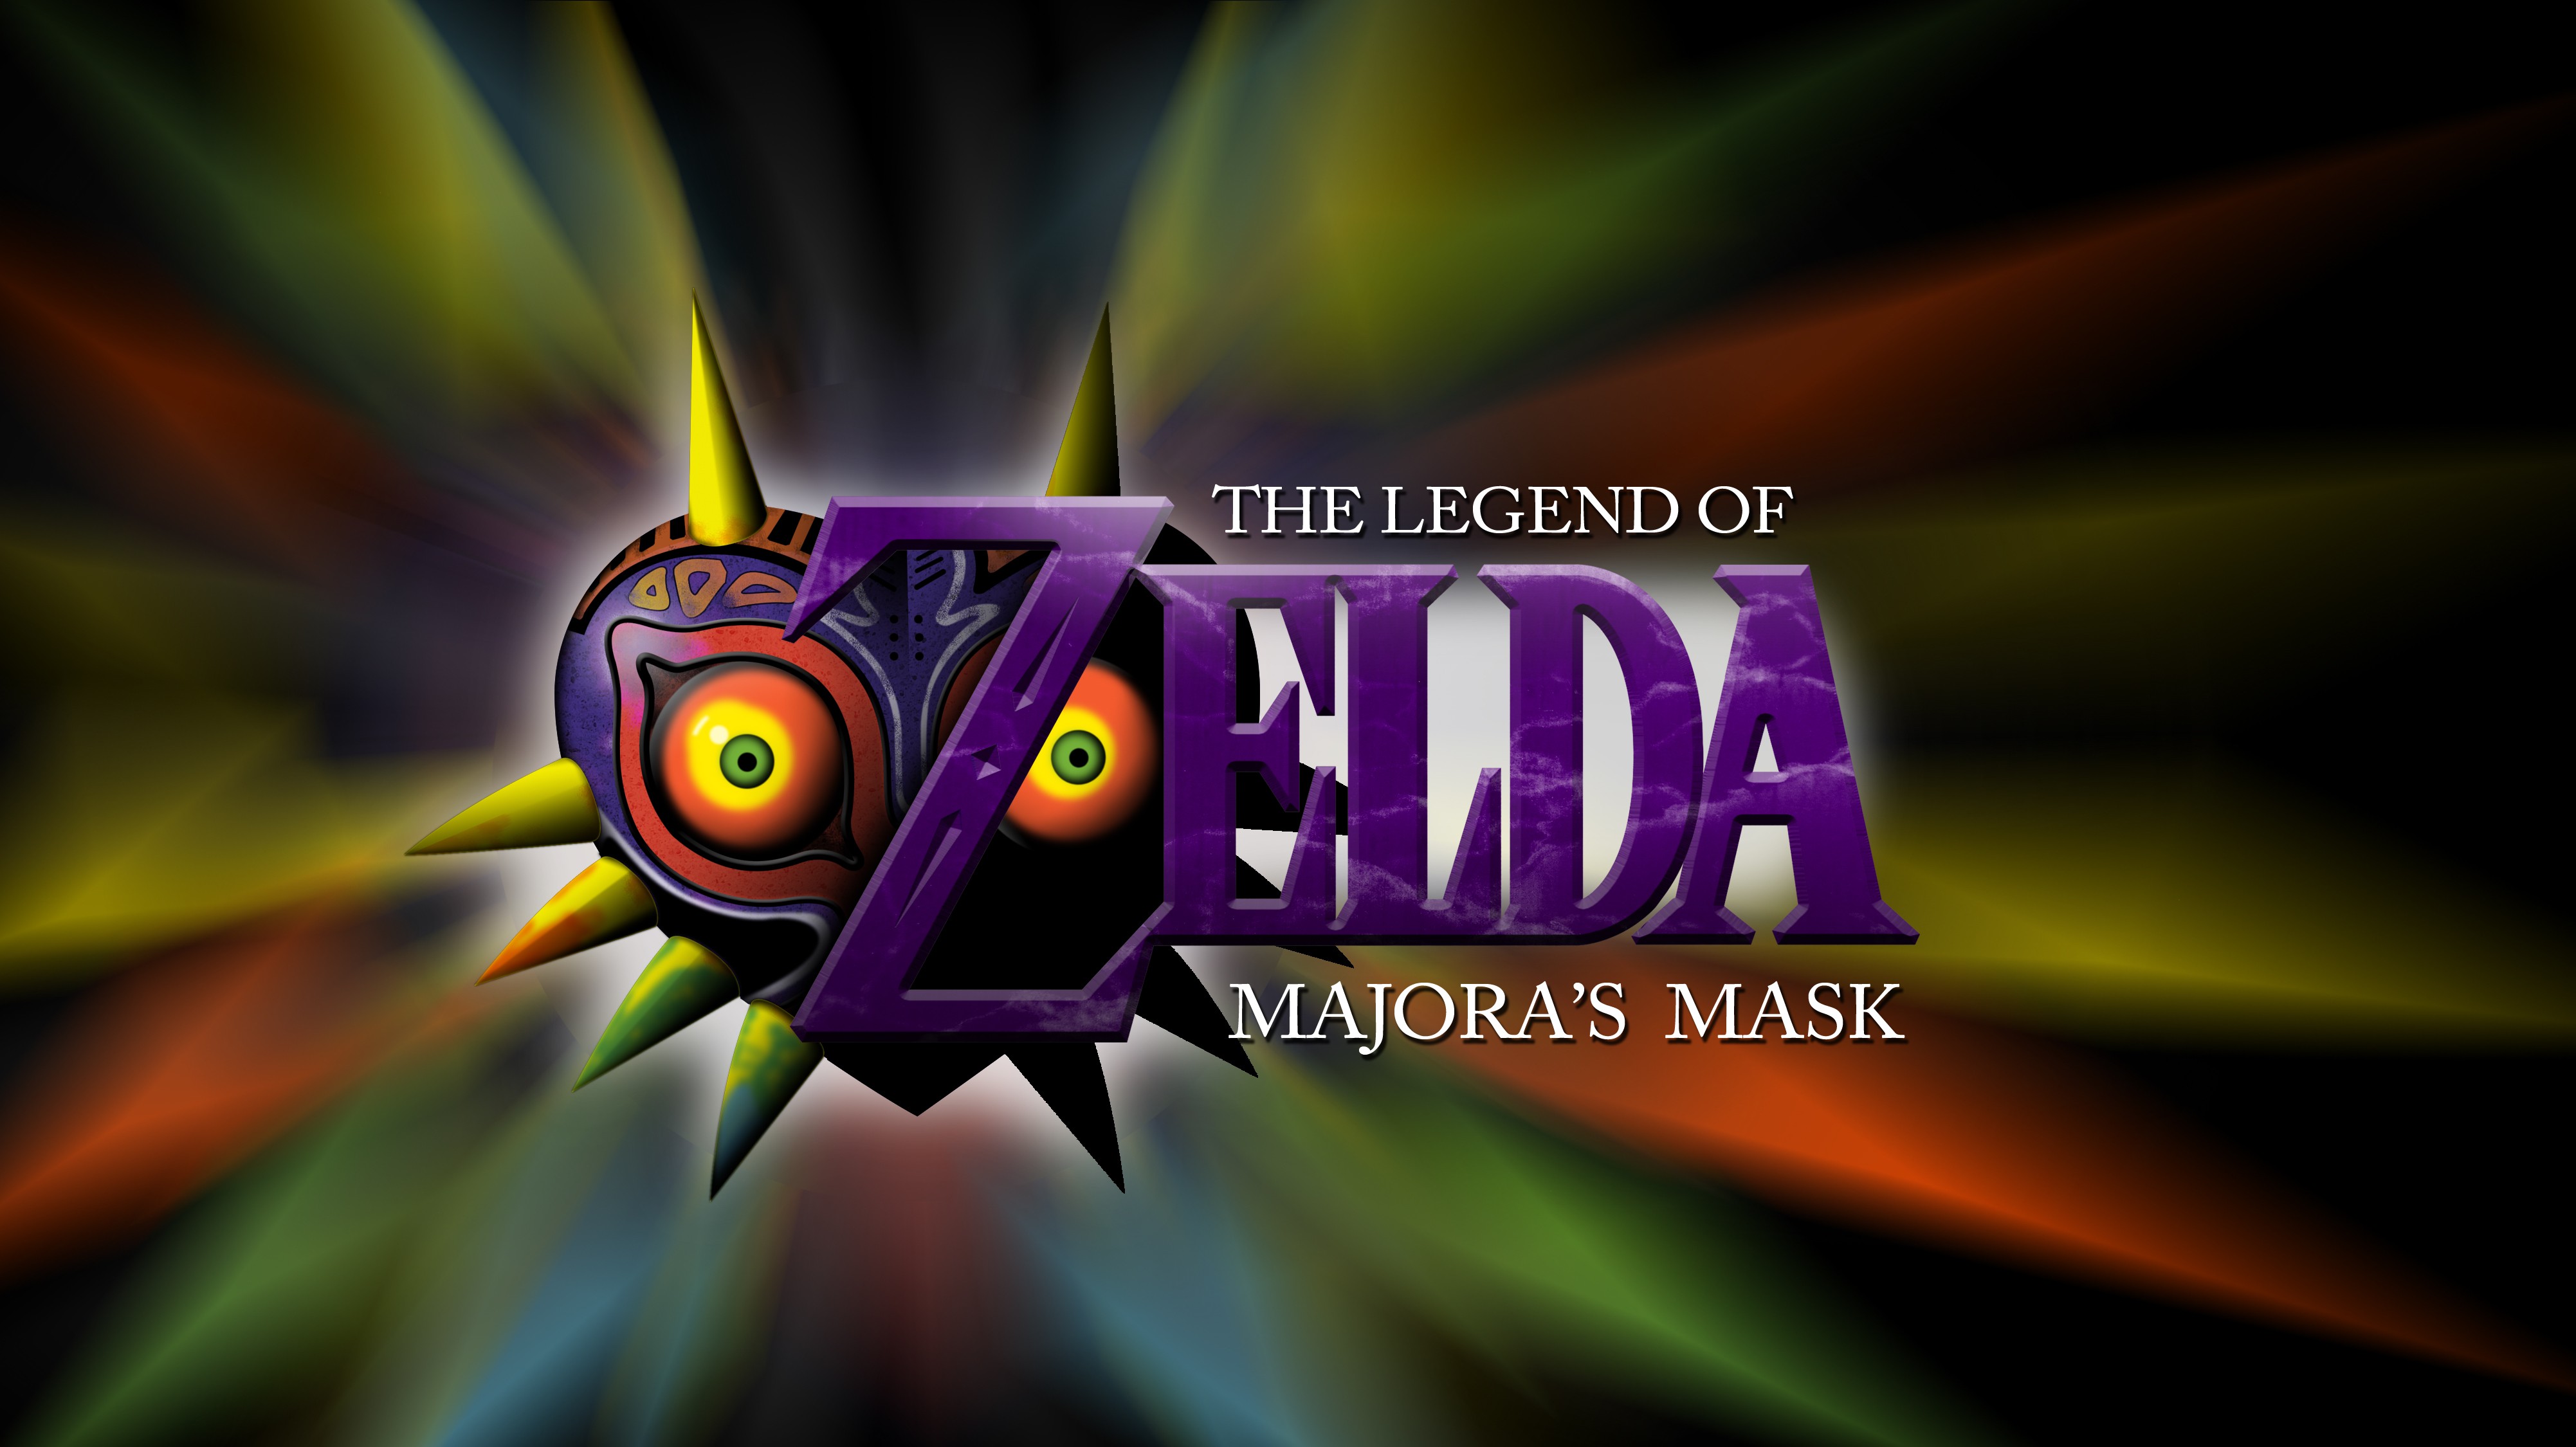 General 4005x2250 Zelda The Legend of Zelda video games The Legend of Zelda: Majora's Mask Nintendo